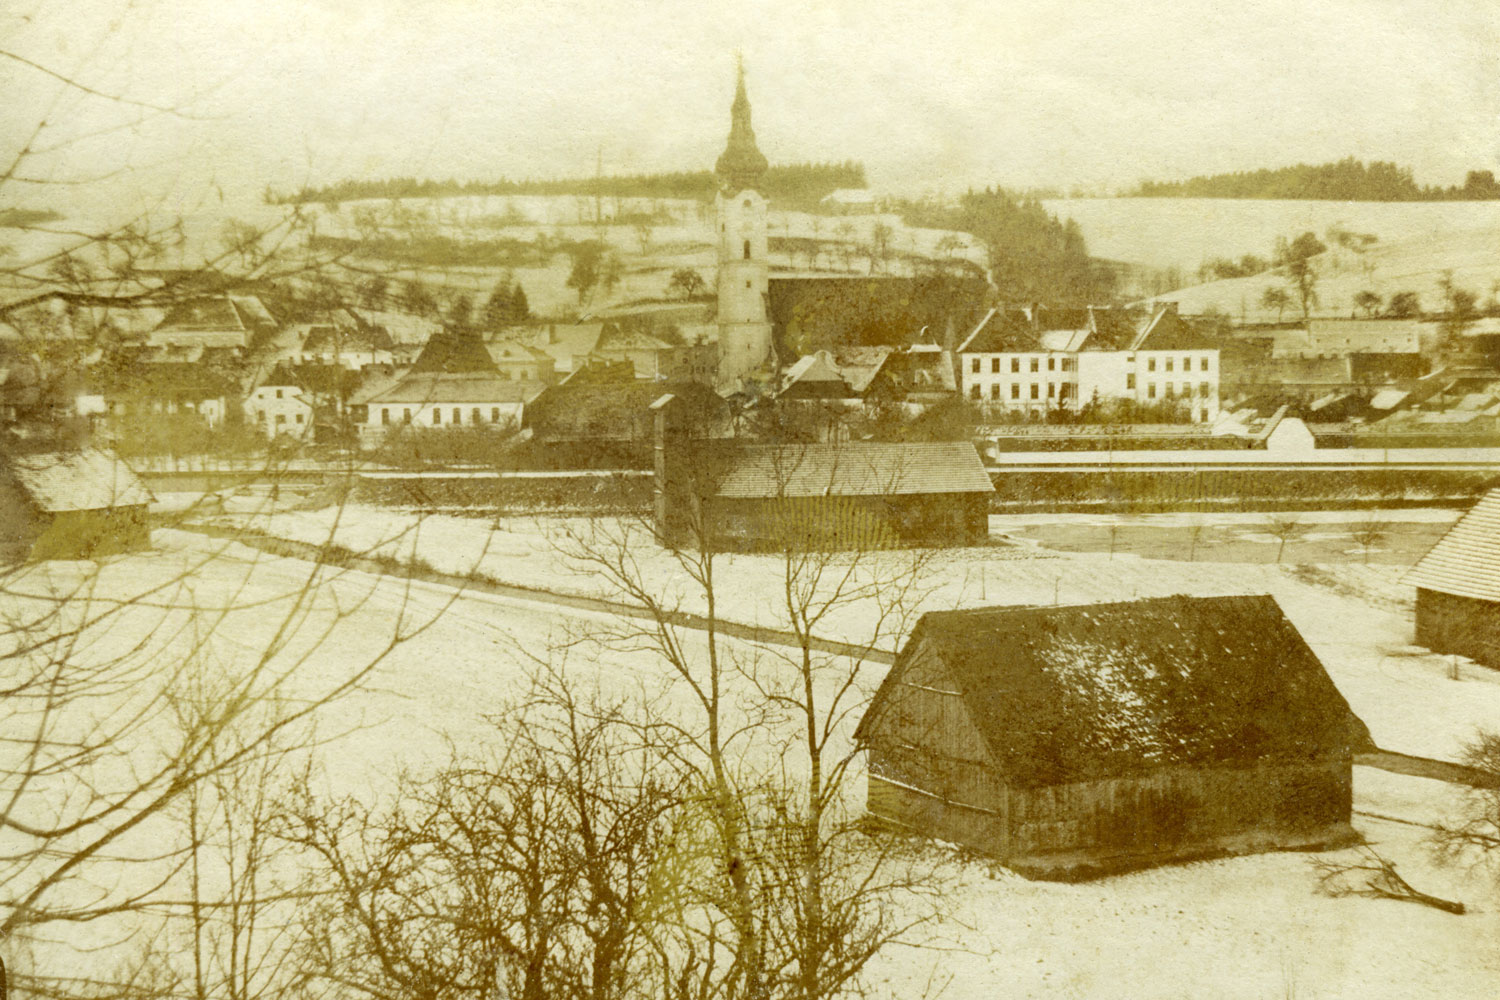 Vor der Stadt gleich Wiesen und Äcker, dazwischen die oft Hochwasser führende Trattnach: Grieskirchen im 19. Jahrhundert